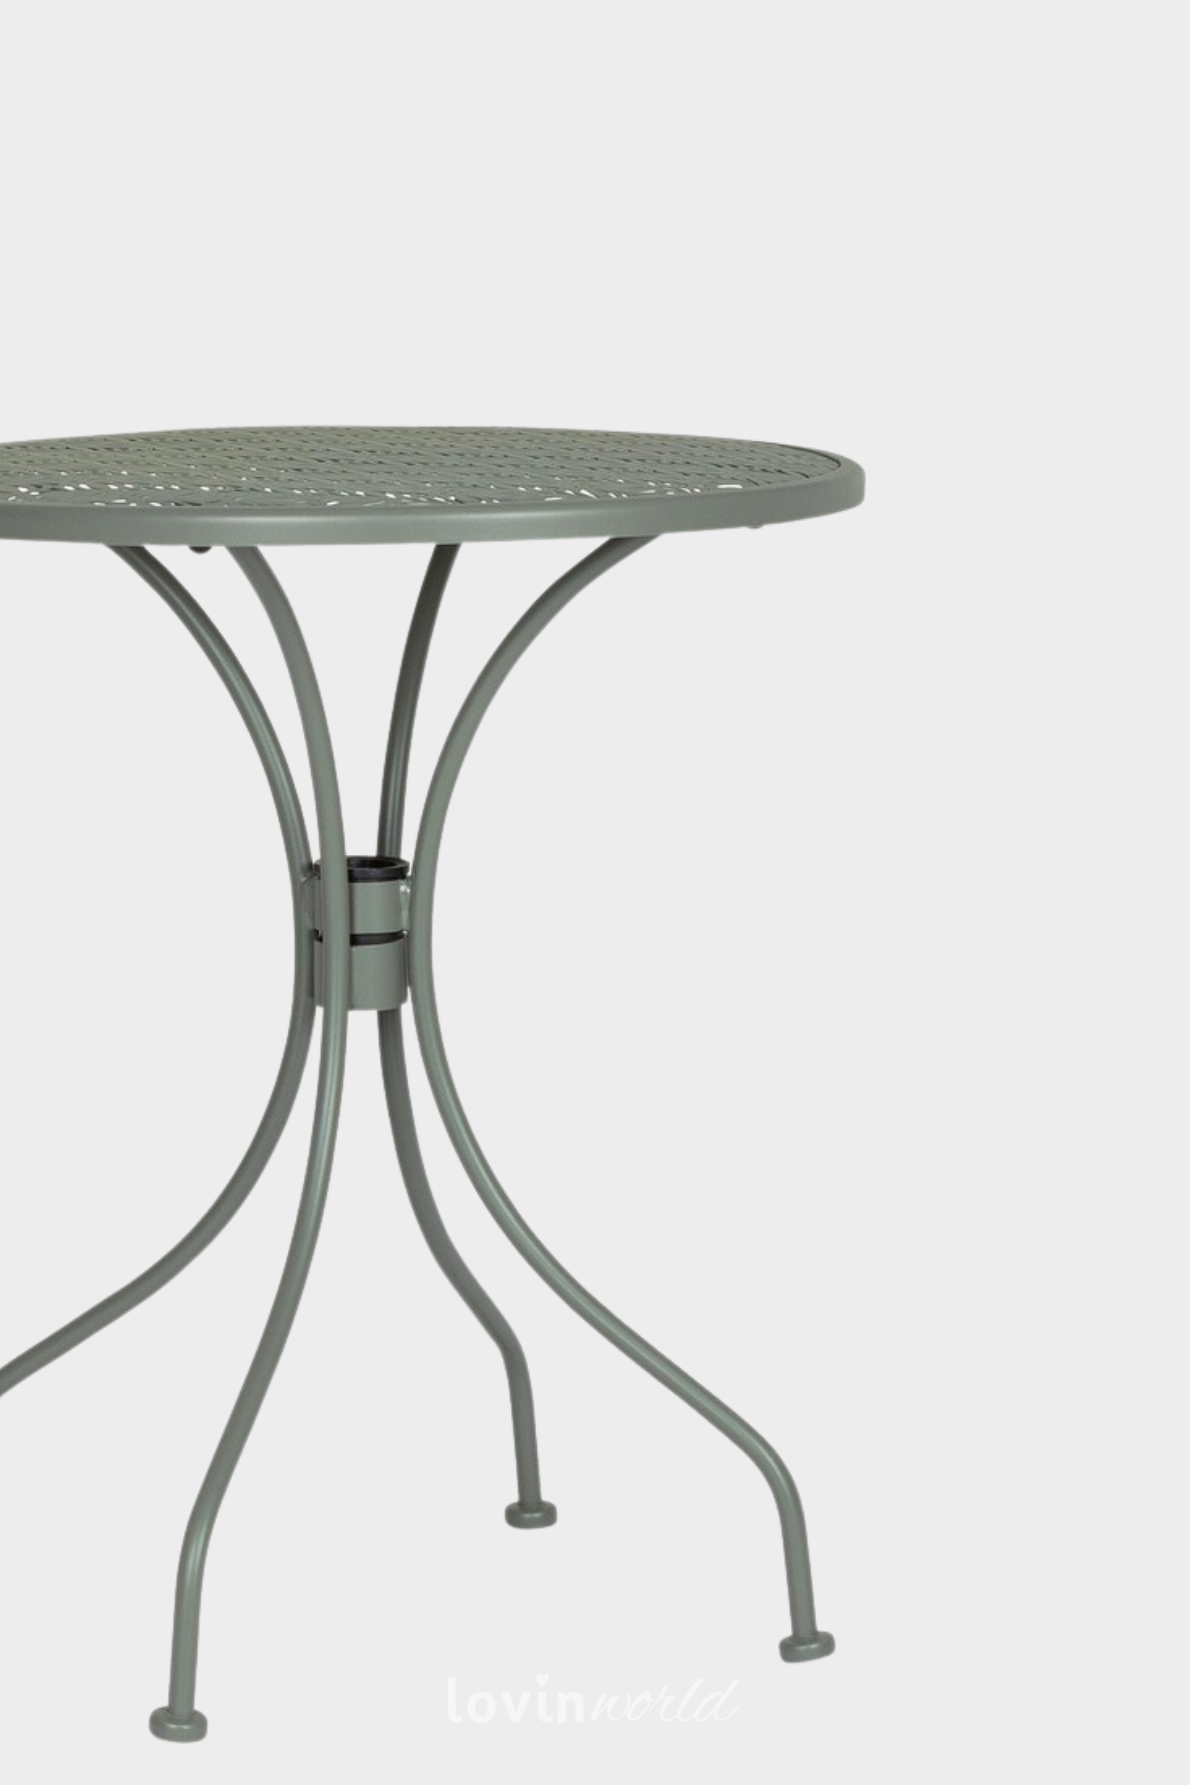 Tavolino da esterno Lizette Ø60 cm. in acciaio, colore verde scuro-5